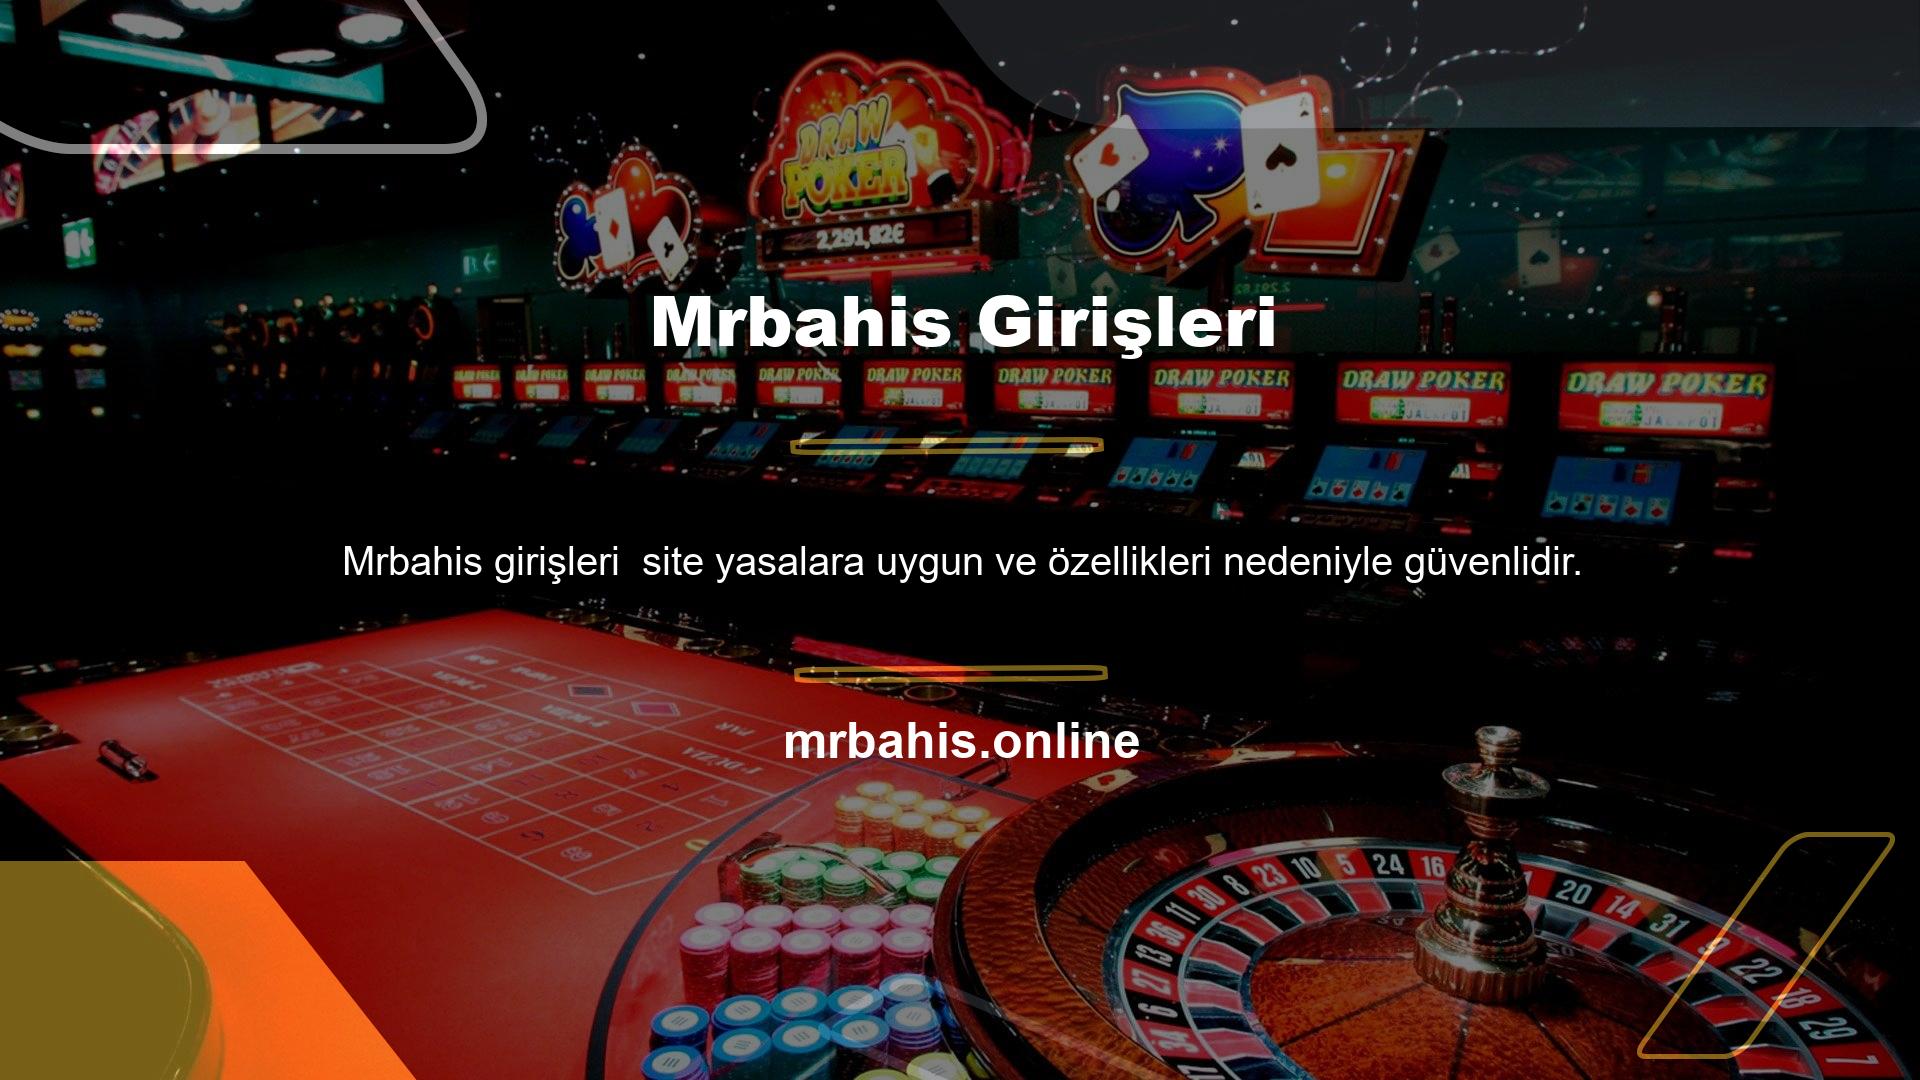 Mrbahis mobil uygulaması, çevrimiçi bir casino için ihtiyacınız olan her şeye sahiptir, böylece endişelenmeden oyun oynayabilir ve bahis oynayabilirsiniz Birçok kişi Türkiye’de yasa dışı casino sitelerinin varlığından endişe duymaktadır